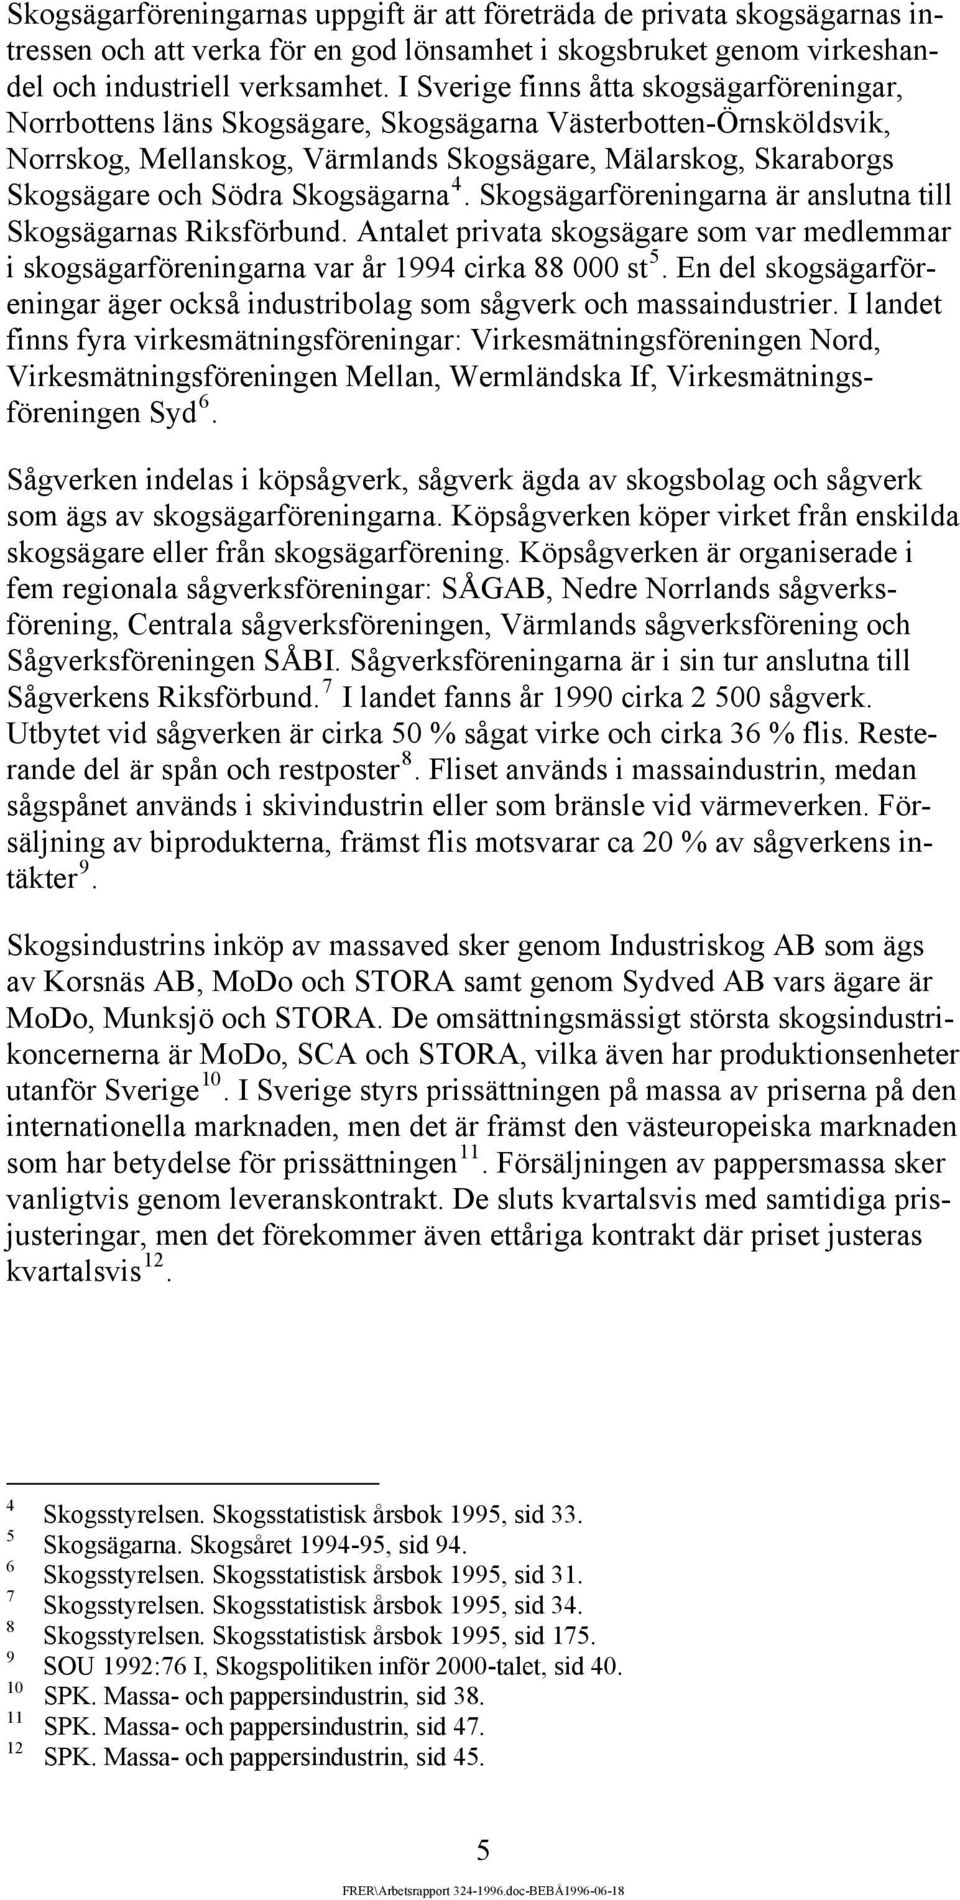 Skogsägarna 4. Skogsägarföreningarna är anslutna till Skogsägarnas Riksförbund. ntalet privata skogsägare som var medlemmar i skogsägarföreningarna var år 1994 cirka 88 000 st 5.